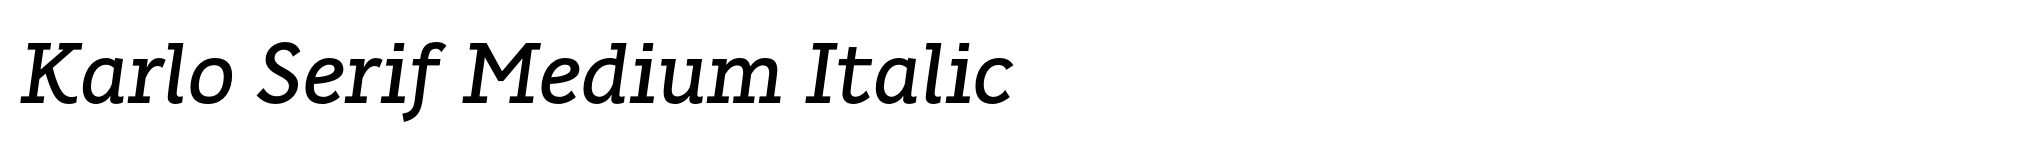 Karlo Serif Medium Italic image